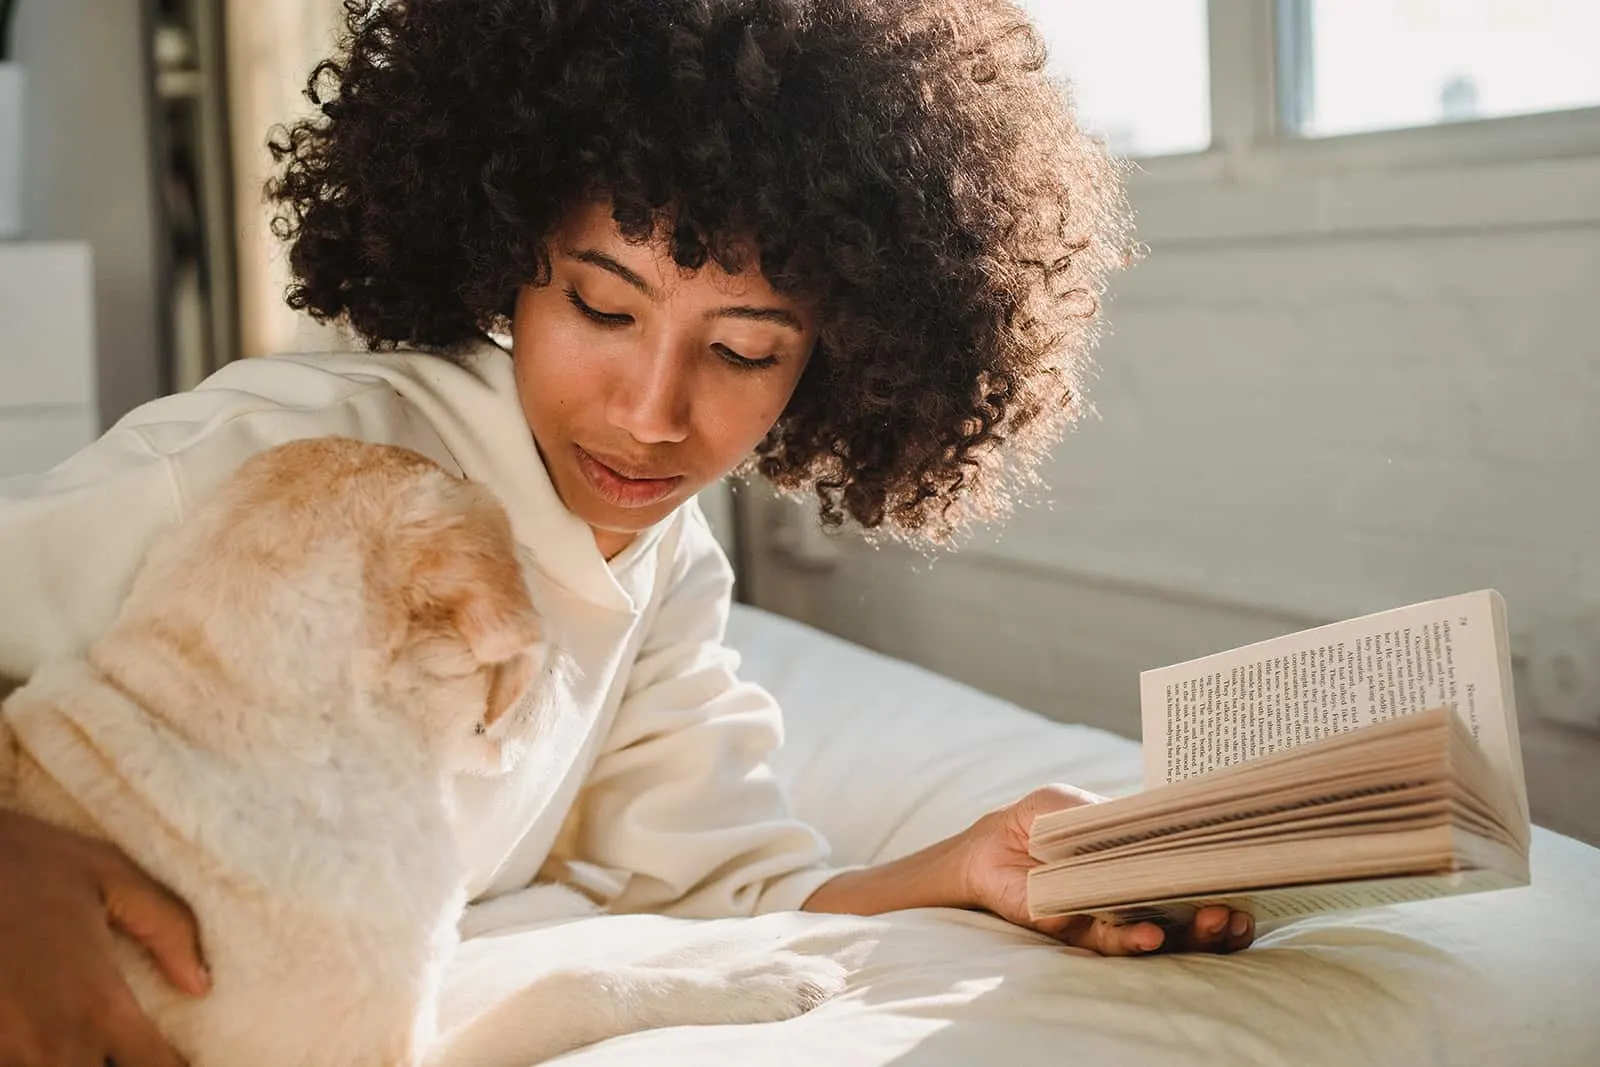 Eine Frau, die einen Hund streichelt, während sie ein Buch liest und auf einem Bett liegt